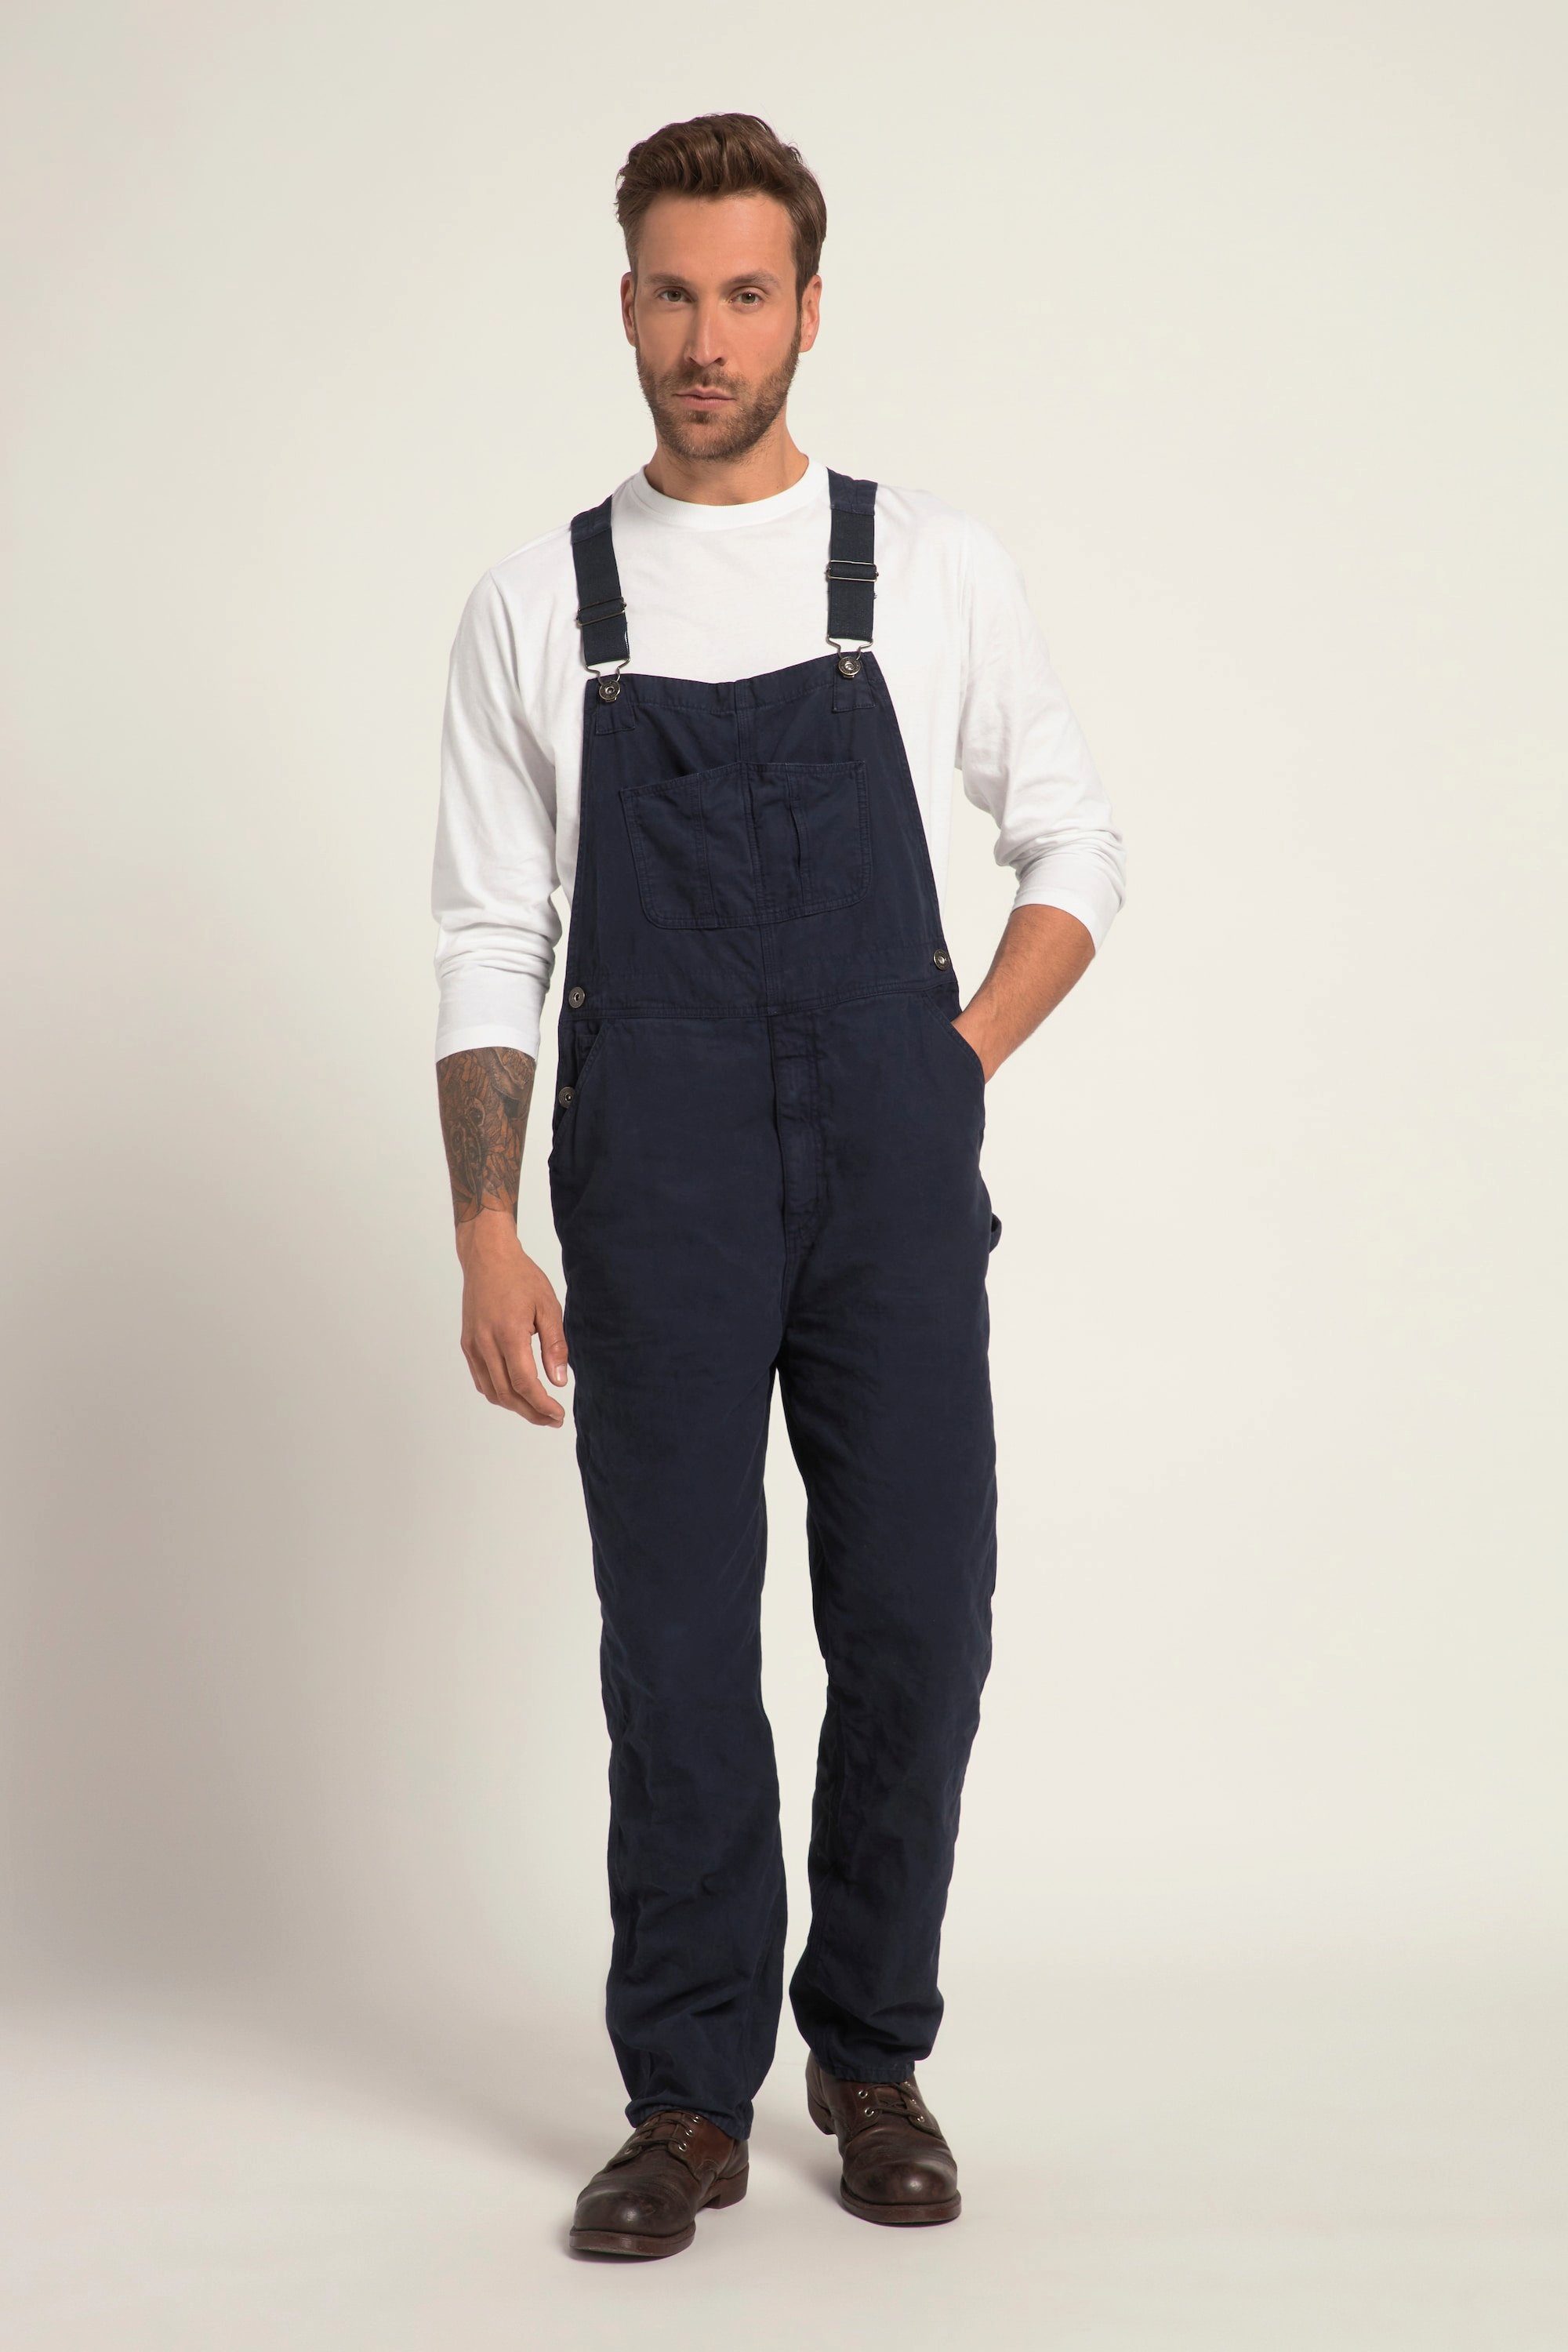 https://i.otto.de/i/otto/833dc465-e53a-59ca-9a2f-1dbf02fa7450/jp1880-5-pocket-jeans-latzhose-workwear-elastische-traeger-viele-taschen-navy-blau.jpg?$formatz$